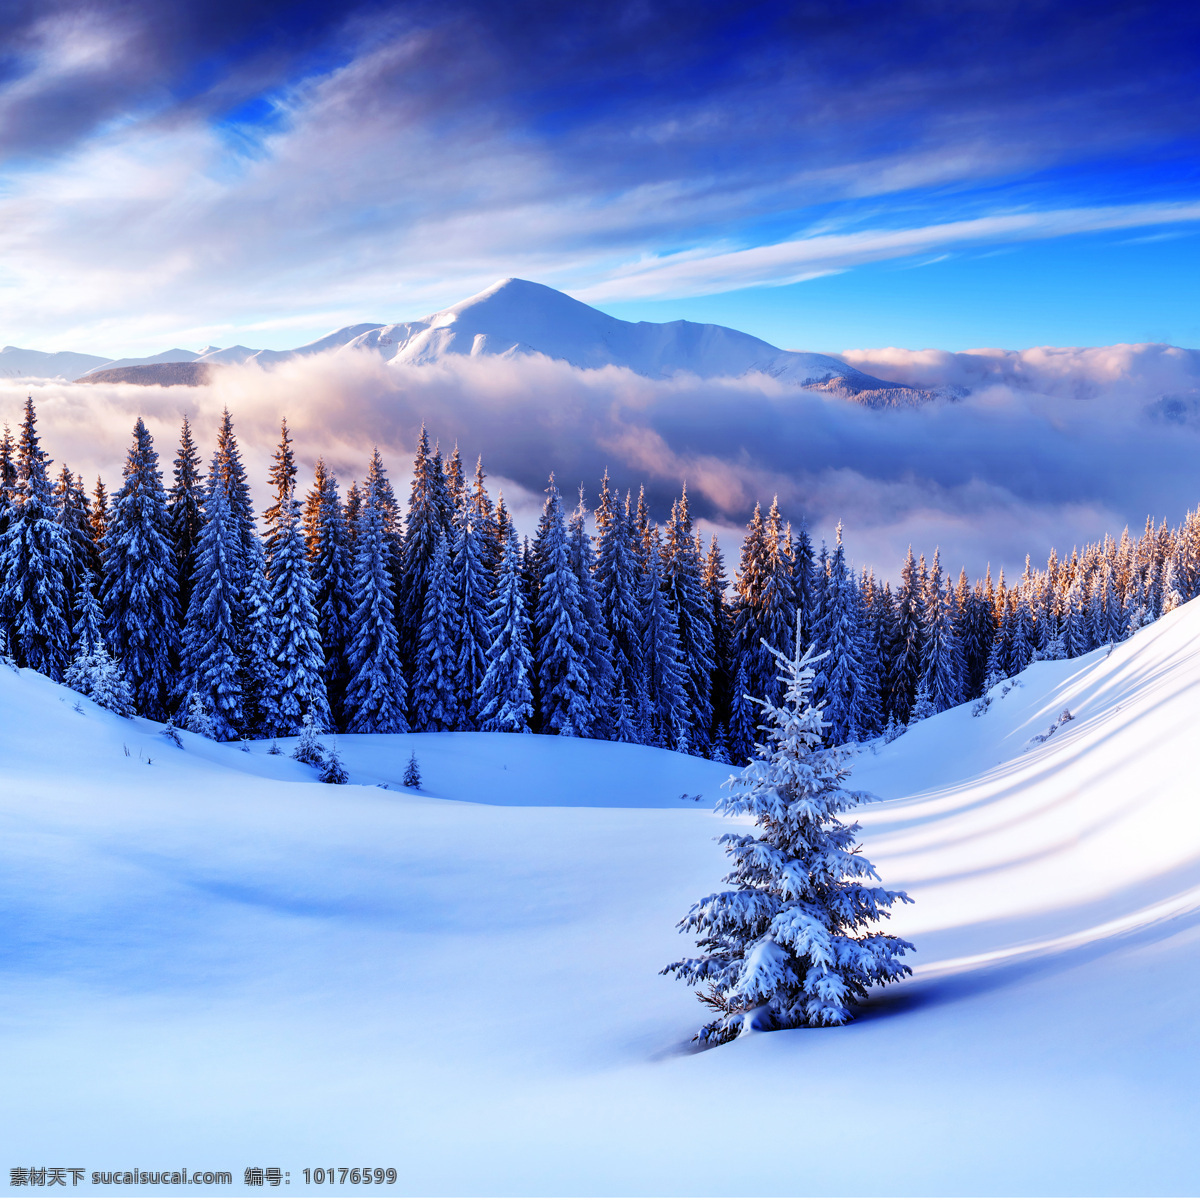 冬季美景 美丽风景 树木 雪地 漂亮景色 风景摄影 雪地风景 自然风景 美丽 风景 自然景观 蓝色